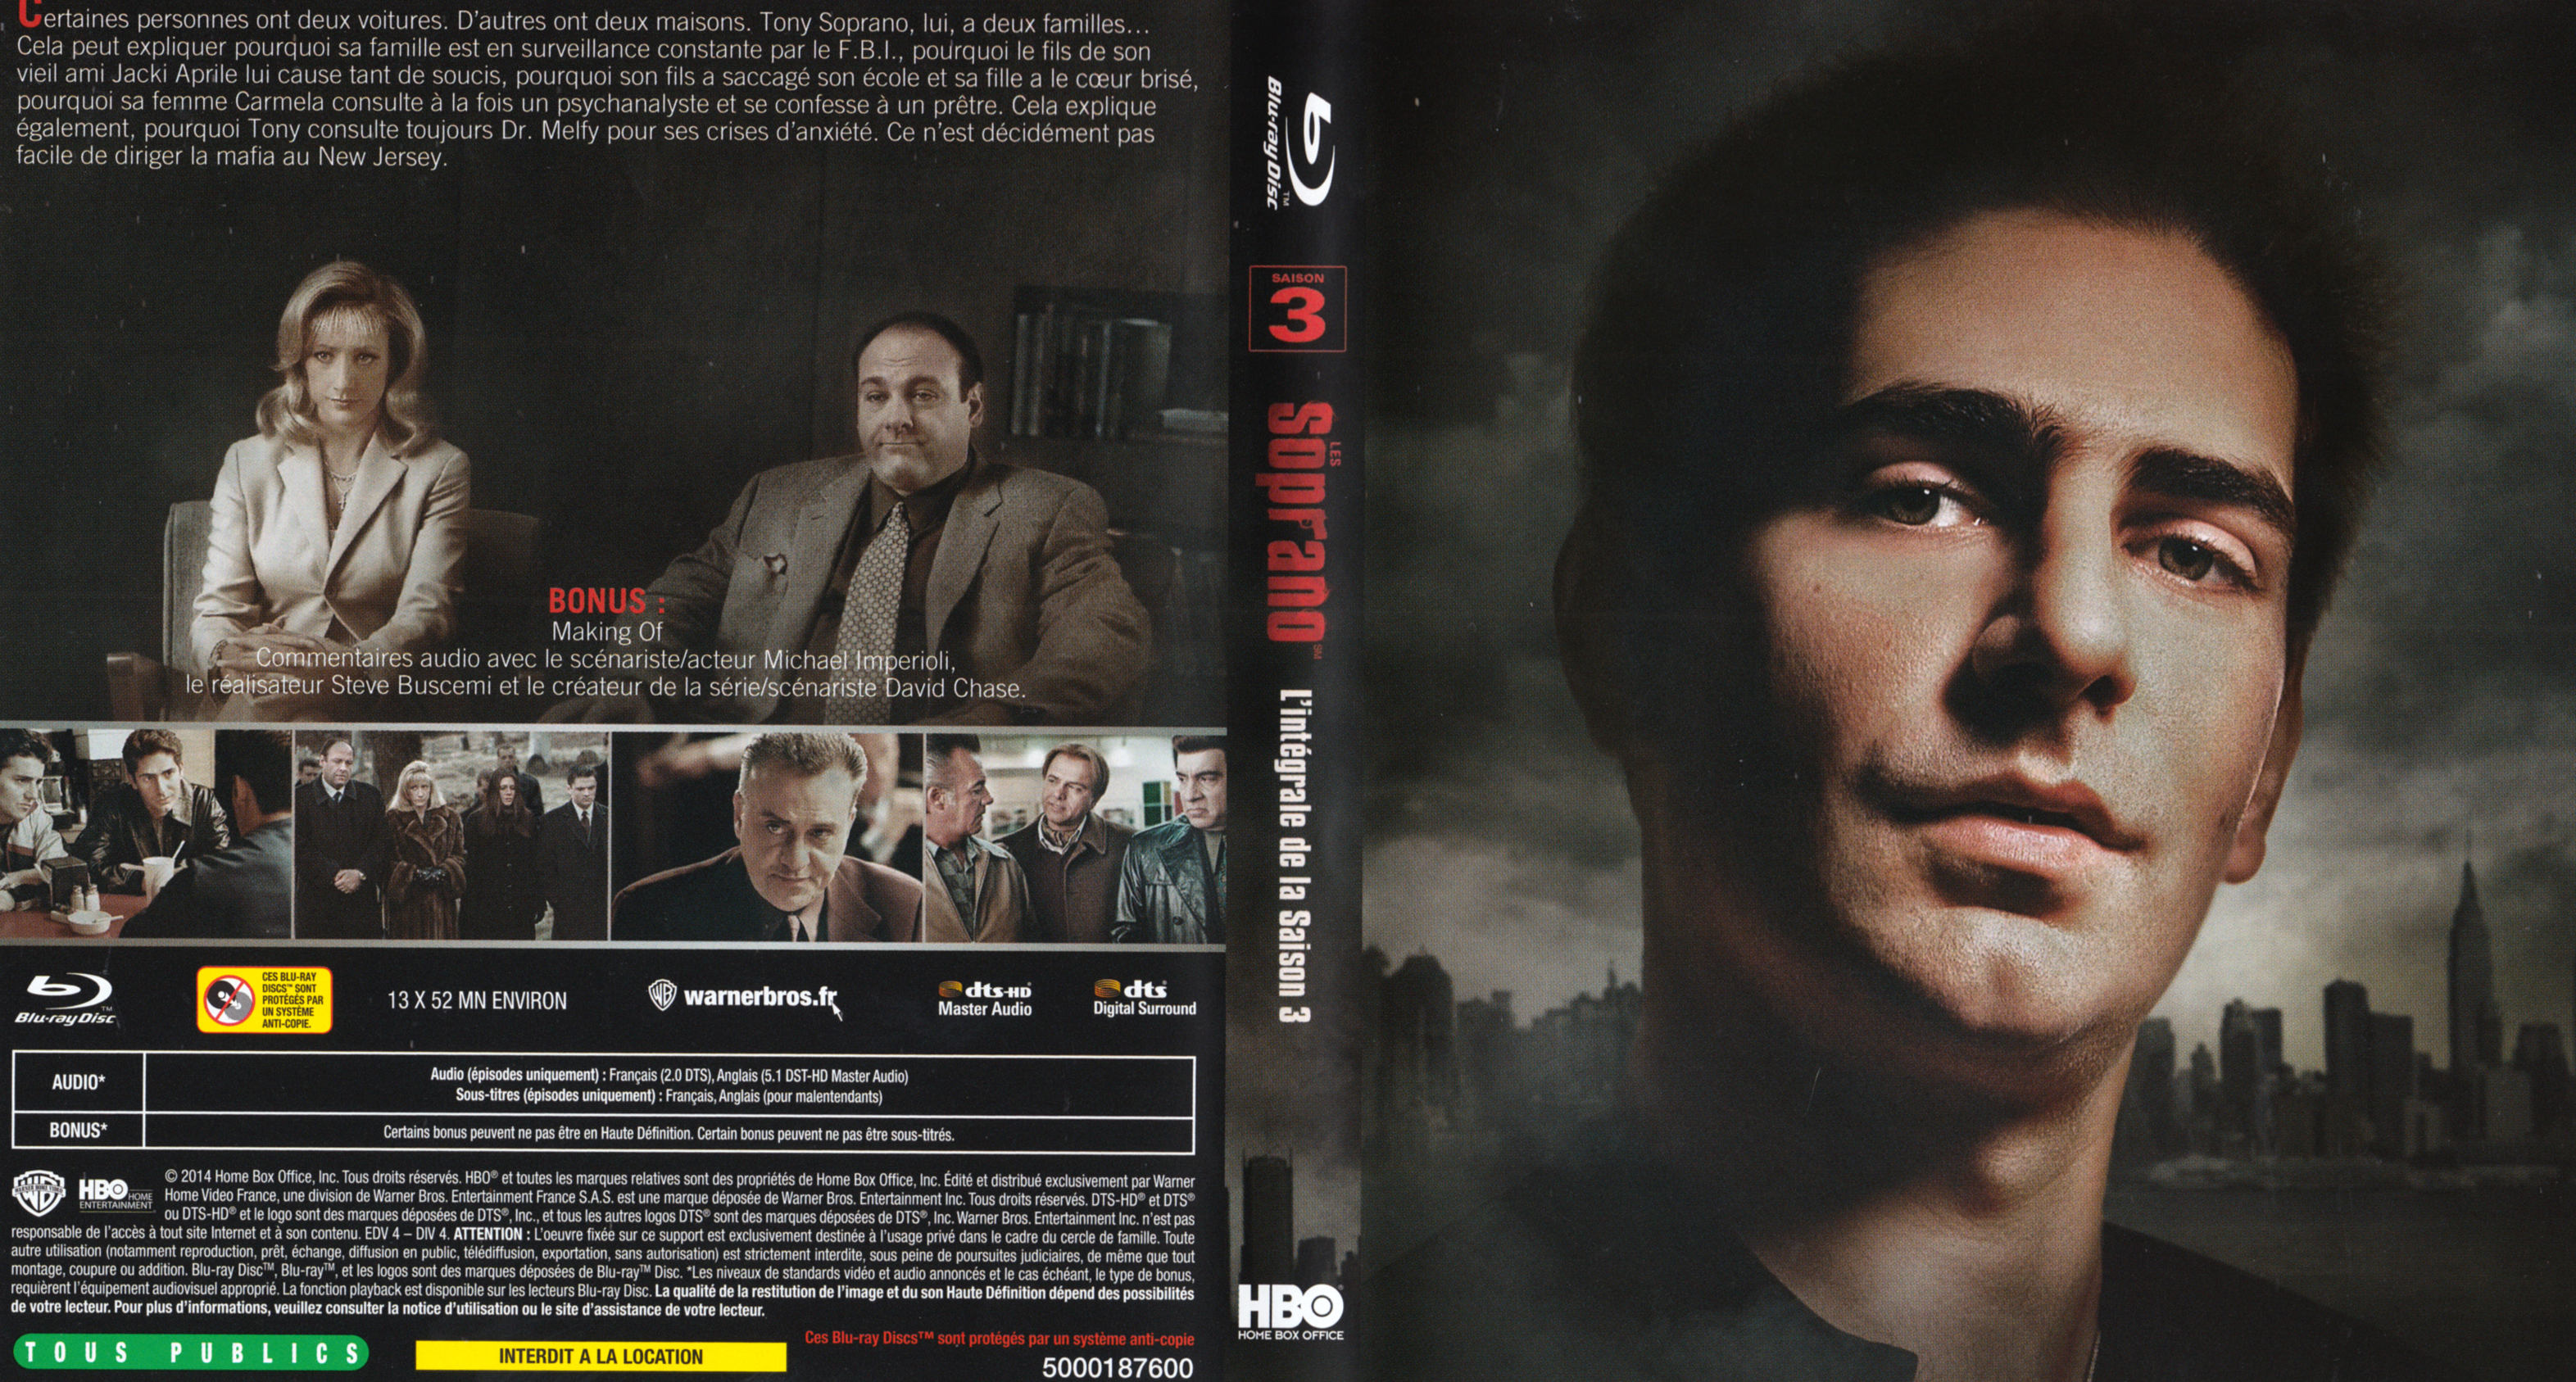 Jaquette DVD Les Soprano Saison 3 (BLU-RAY)